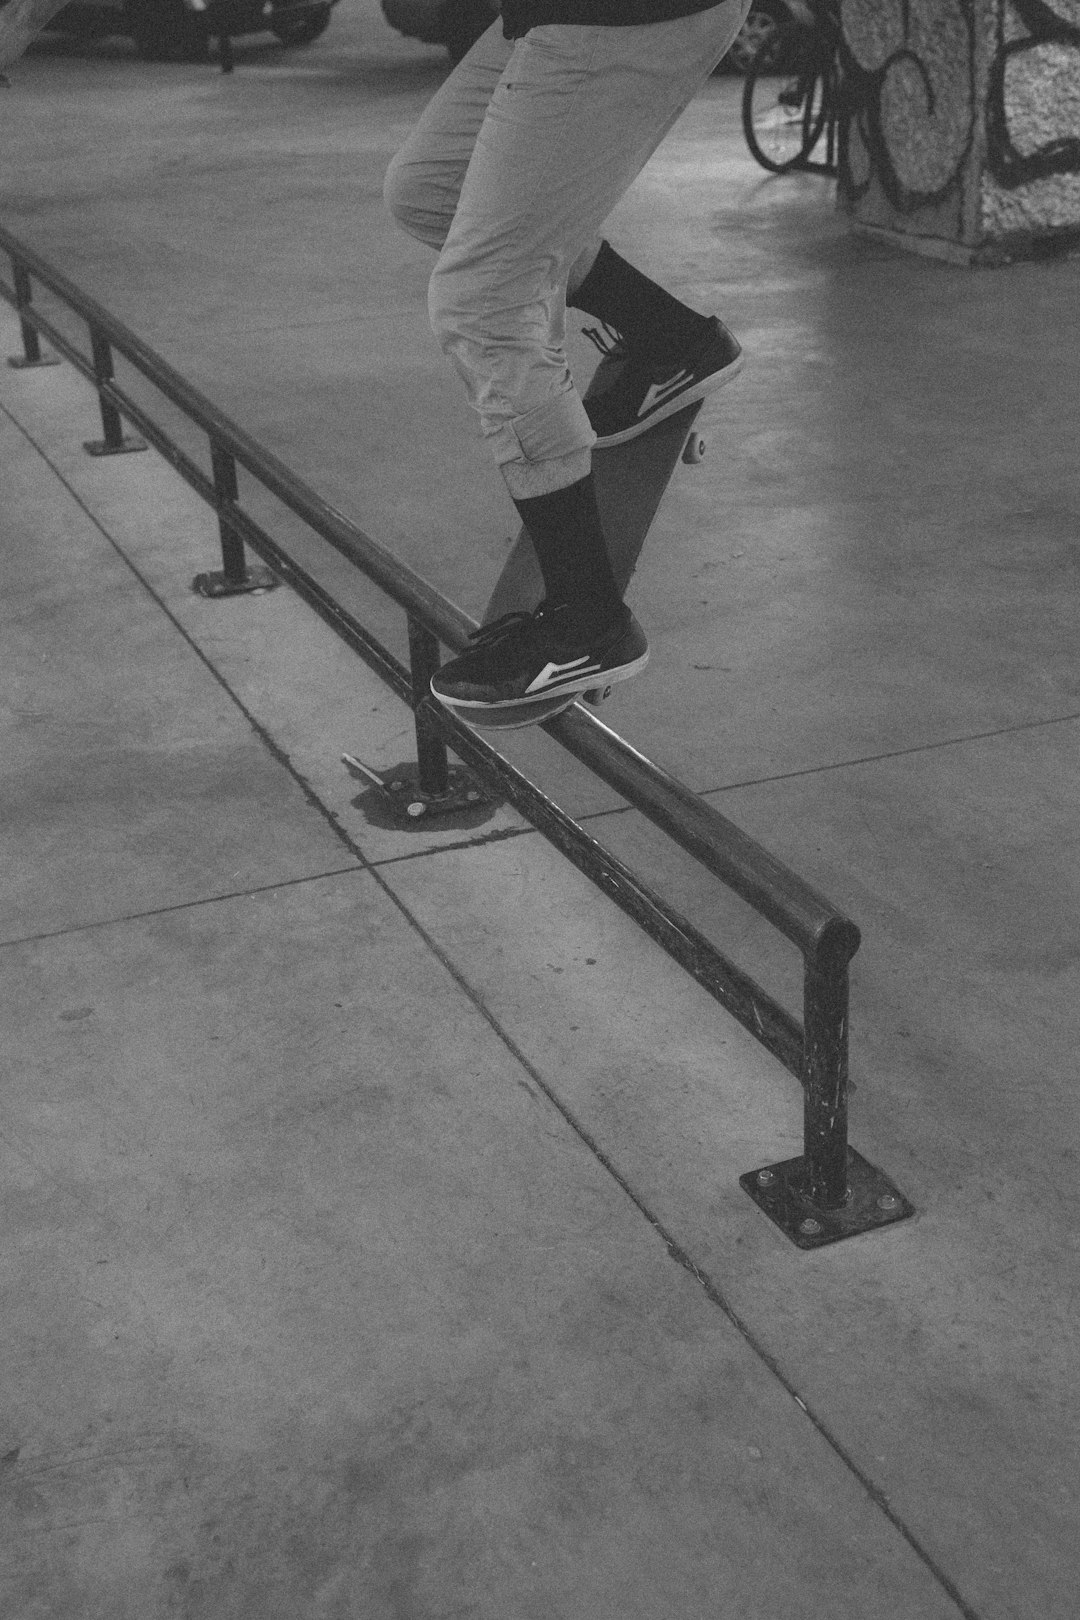 Skateboarding photo spot Van Horne Skatepark Montréal